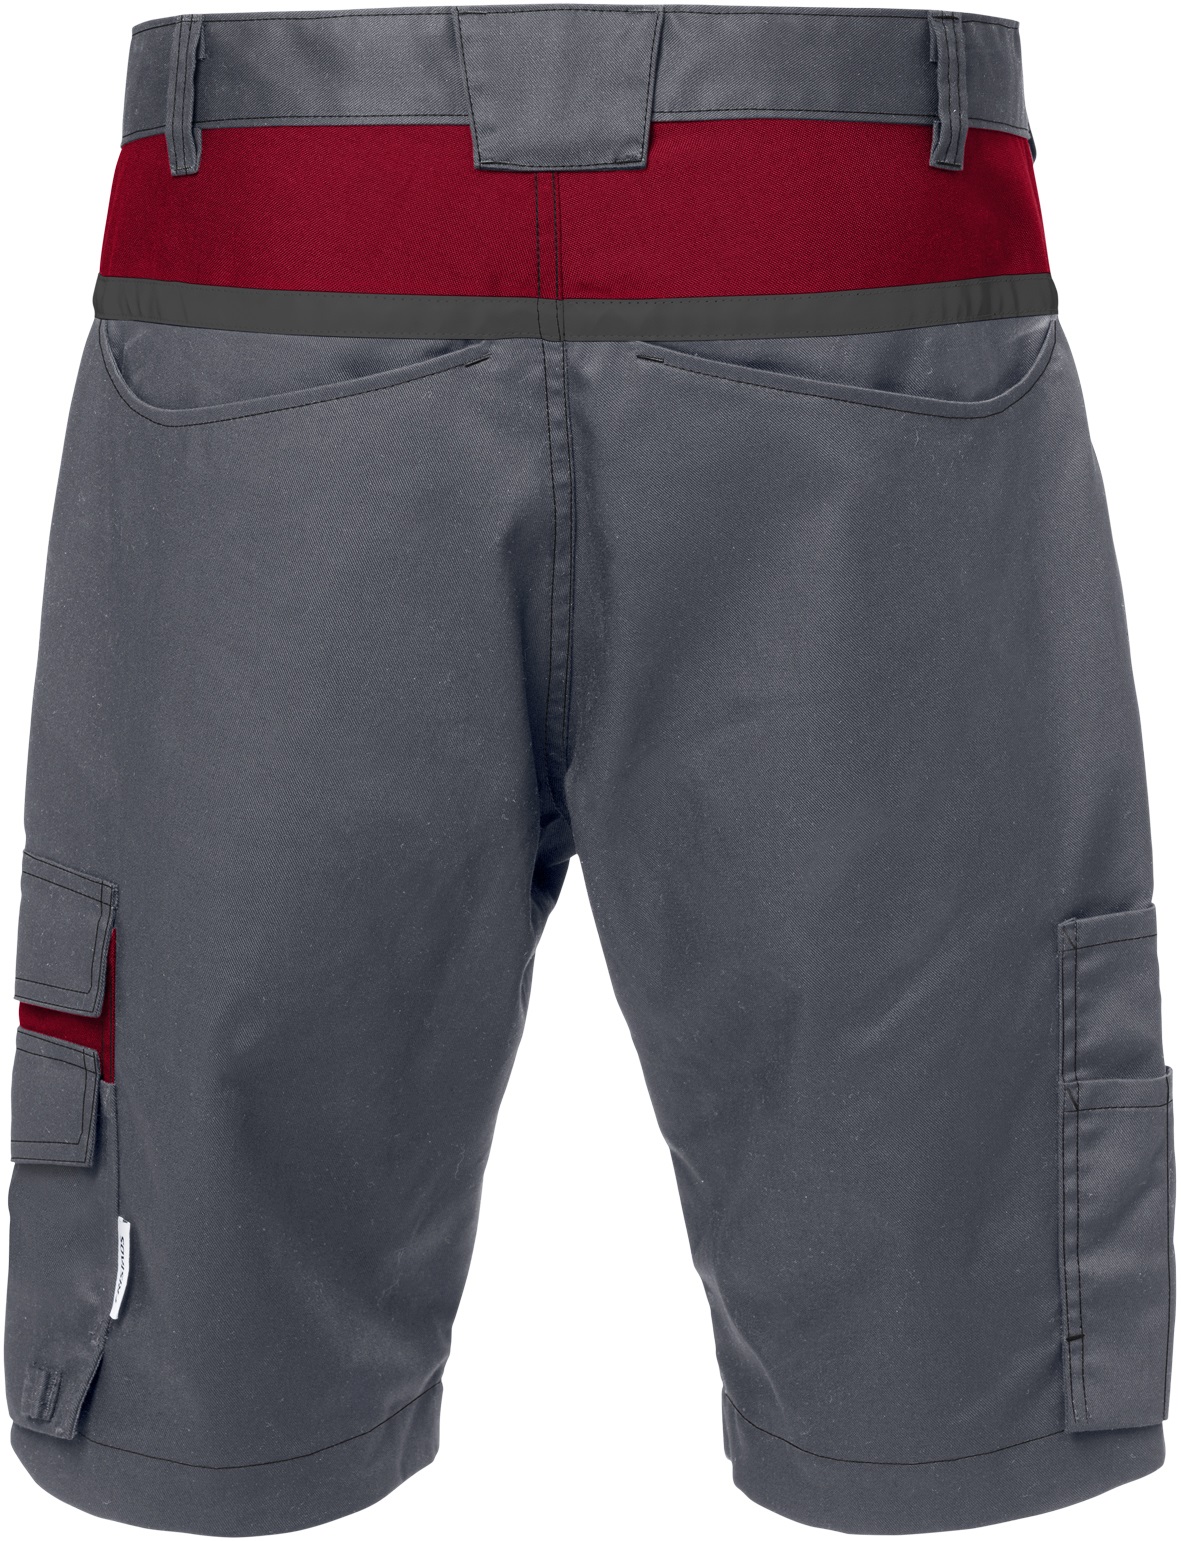 FRISTADS Shorts 2562 STFP - Grau/Rot